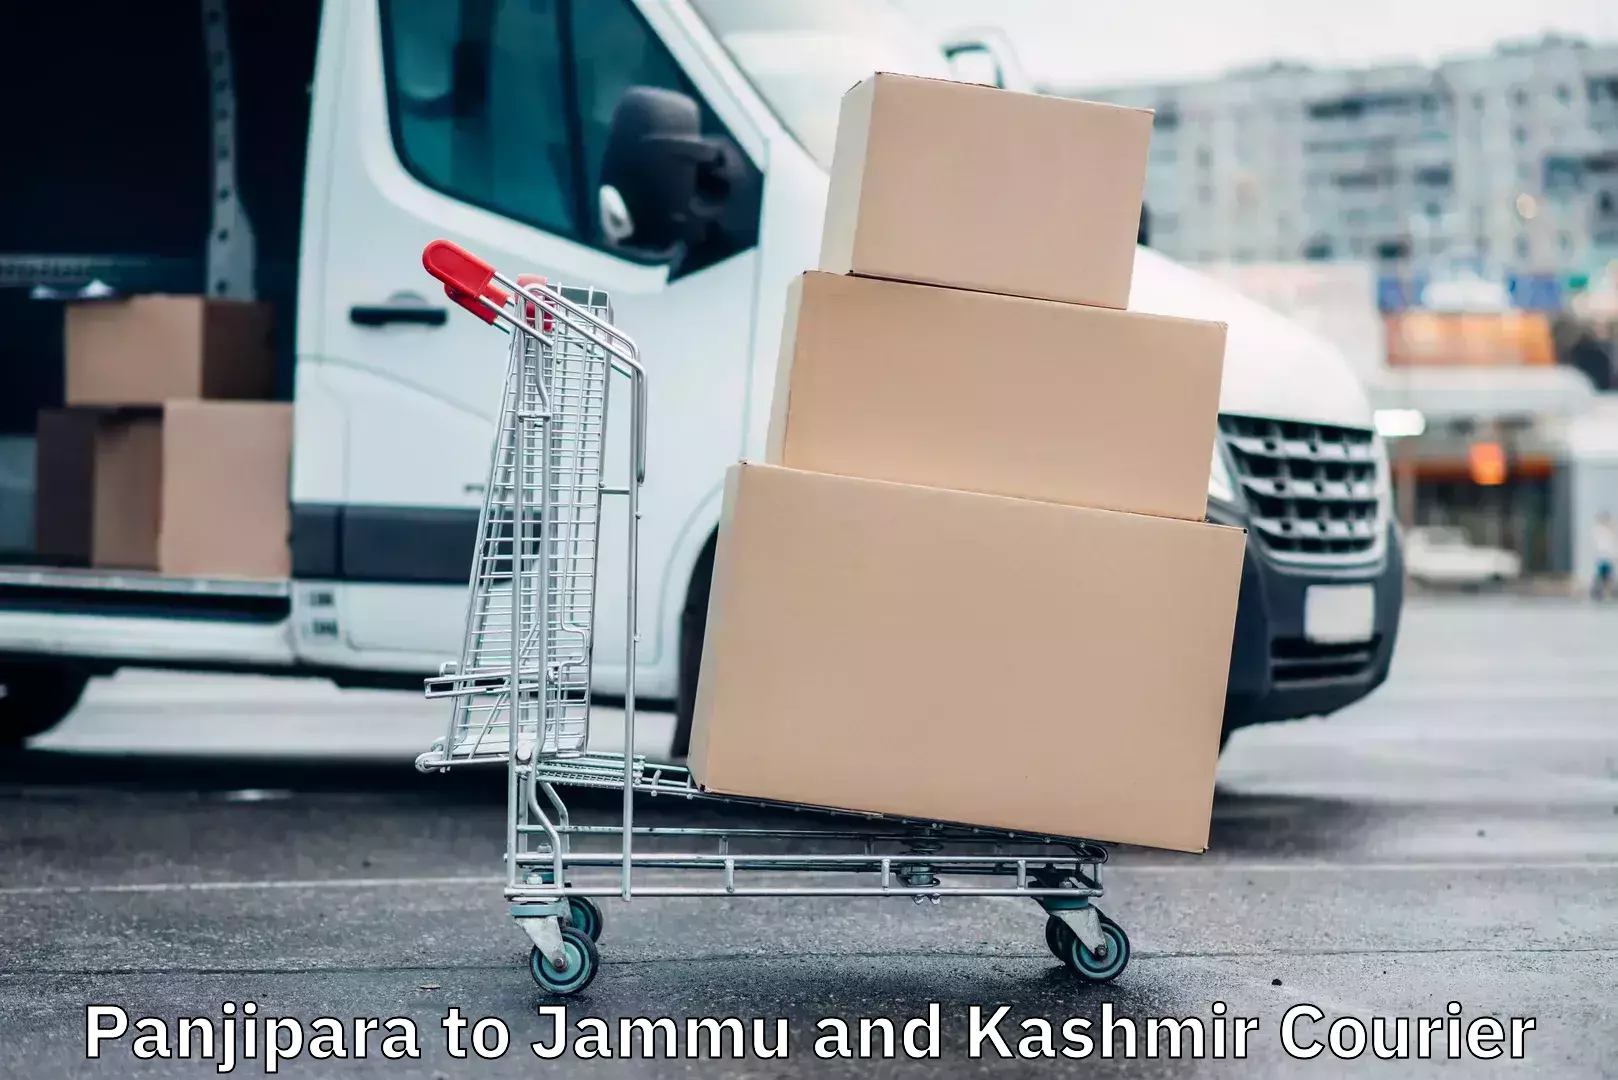 Logistics service provider Panjipara to Jammu and Kashmir